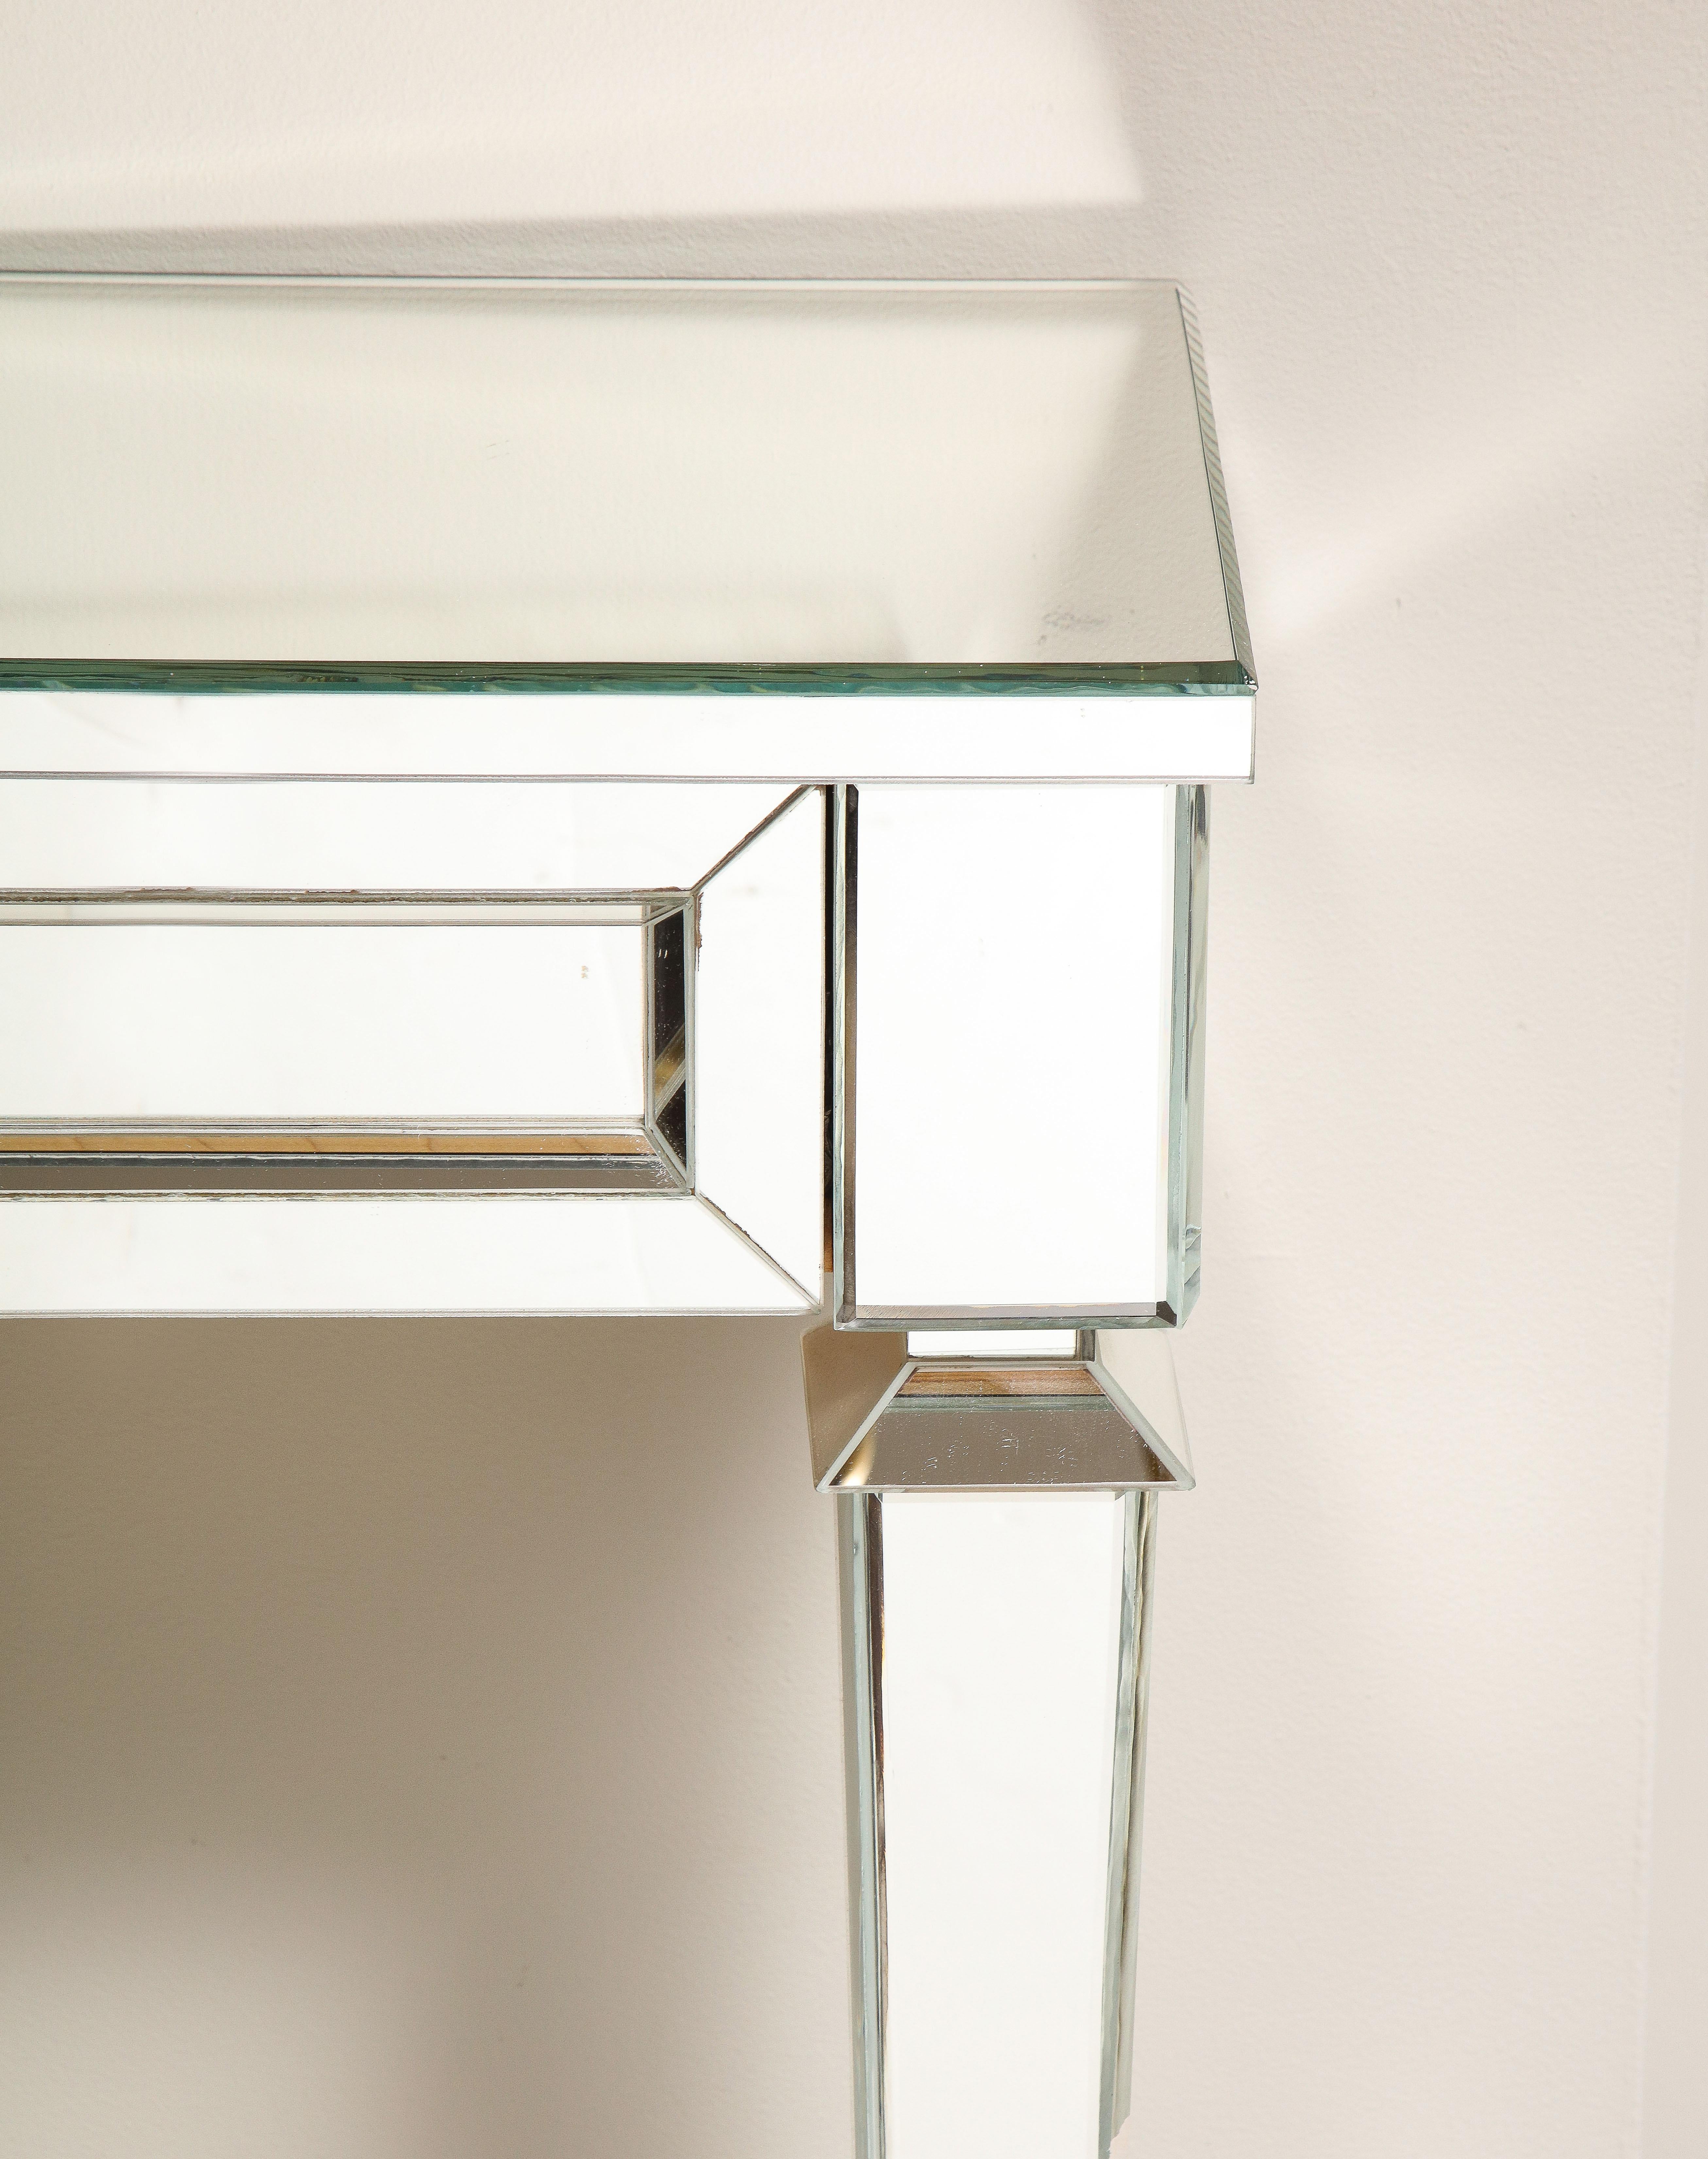 Ein Standmodell einer wandmontierten Spiegelkonsole im neoklassizistischen Stil. Einige Spiegelstücke haben Risse und Absplitterungen. Alle beschädigten Stücke werden beim Kauf repariert. Sonderanfertigungen sind auch für andere Abmessungen möglich.